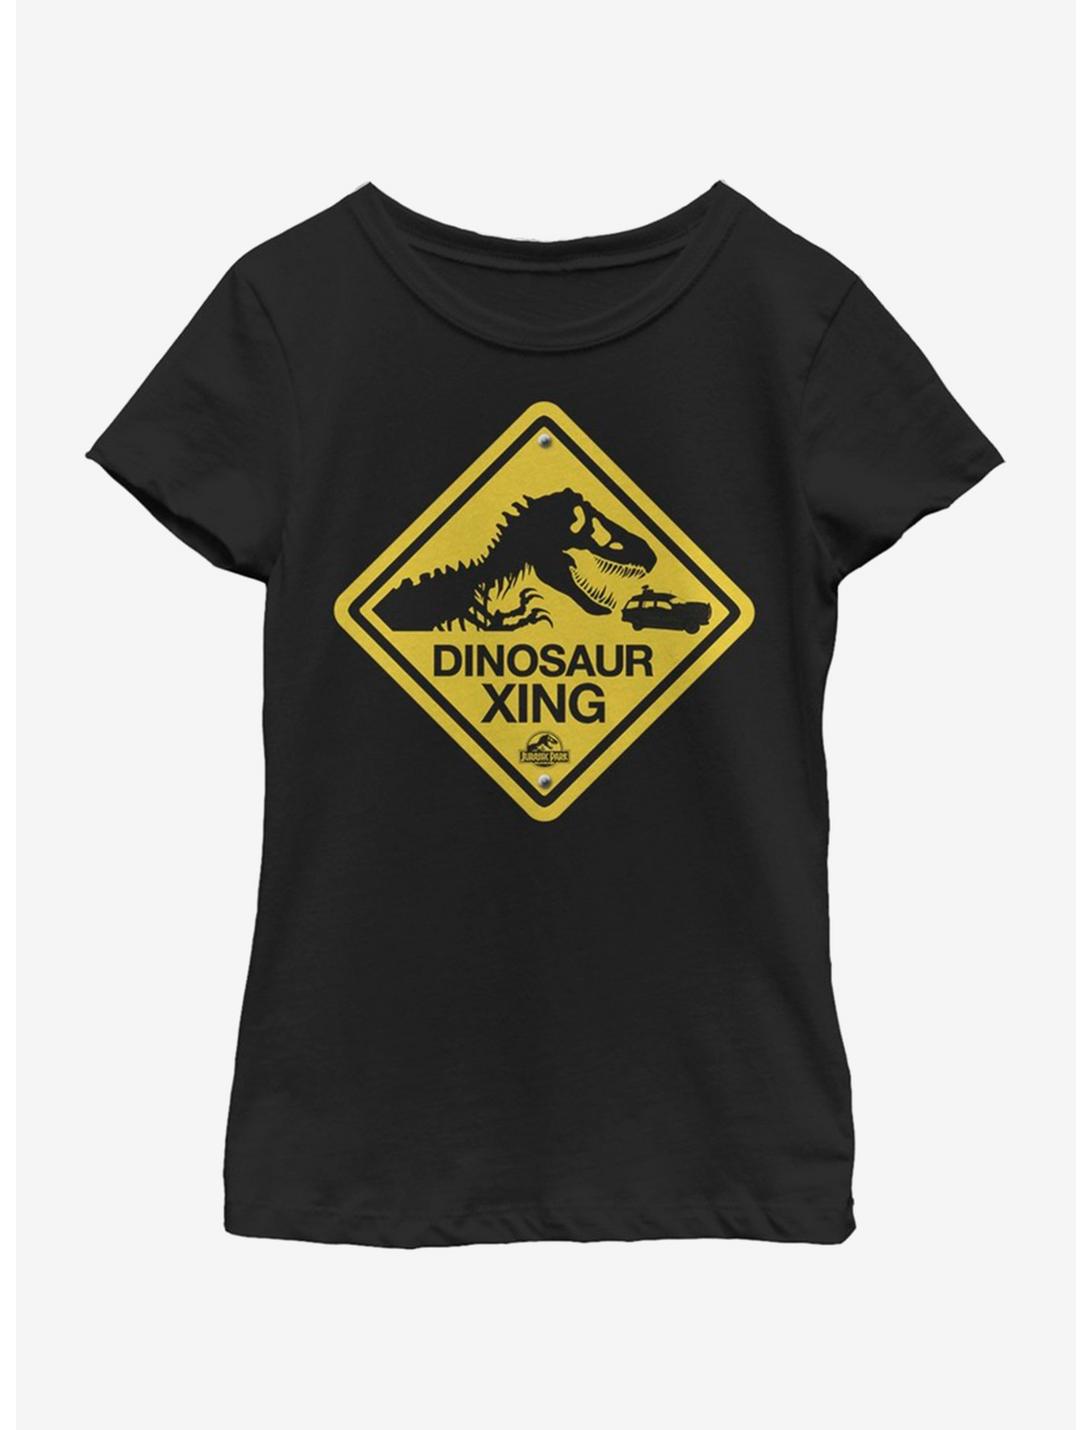 Jurassic Park Dino Xing Youth Girls T-Shirt, BLACK, hi-res